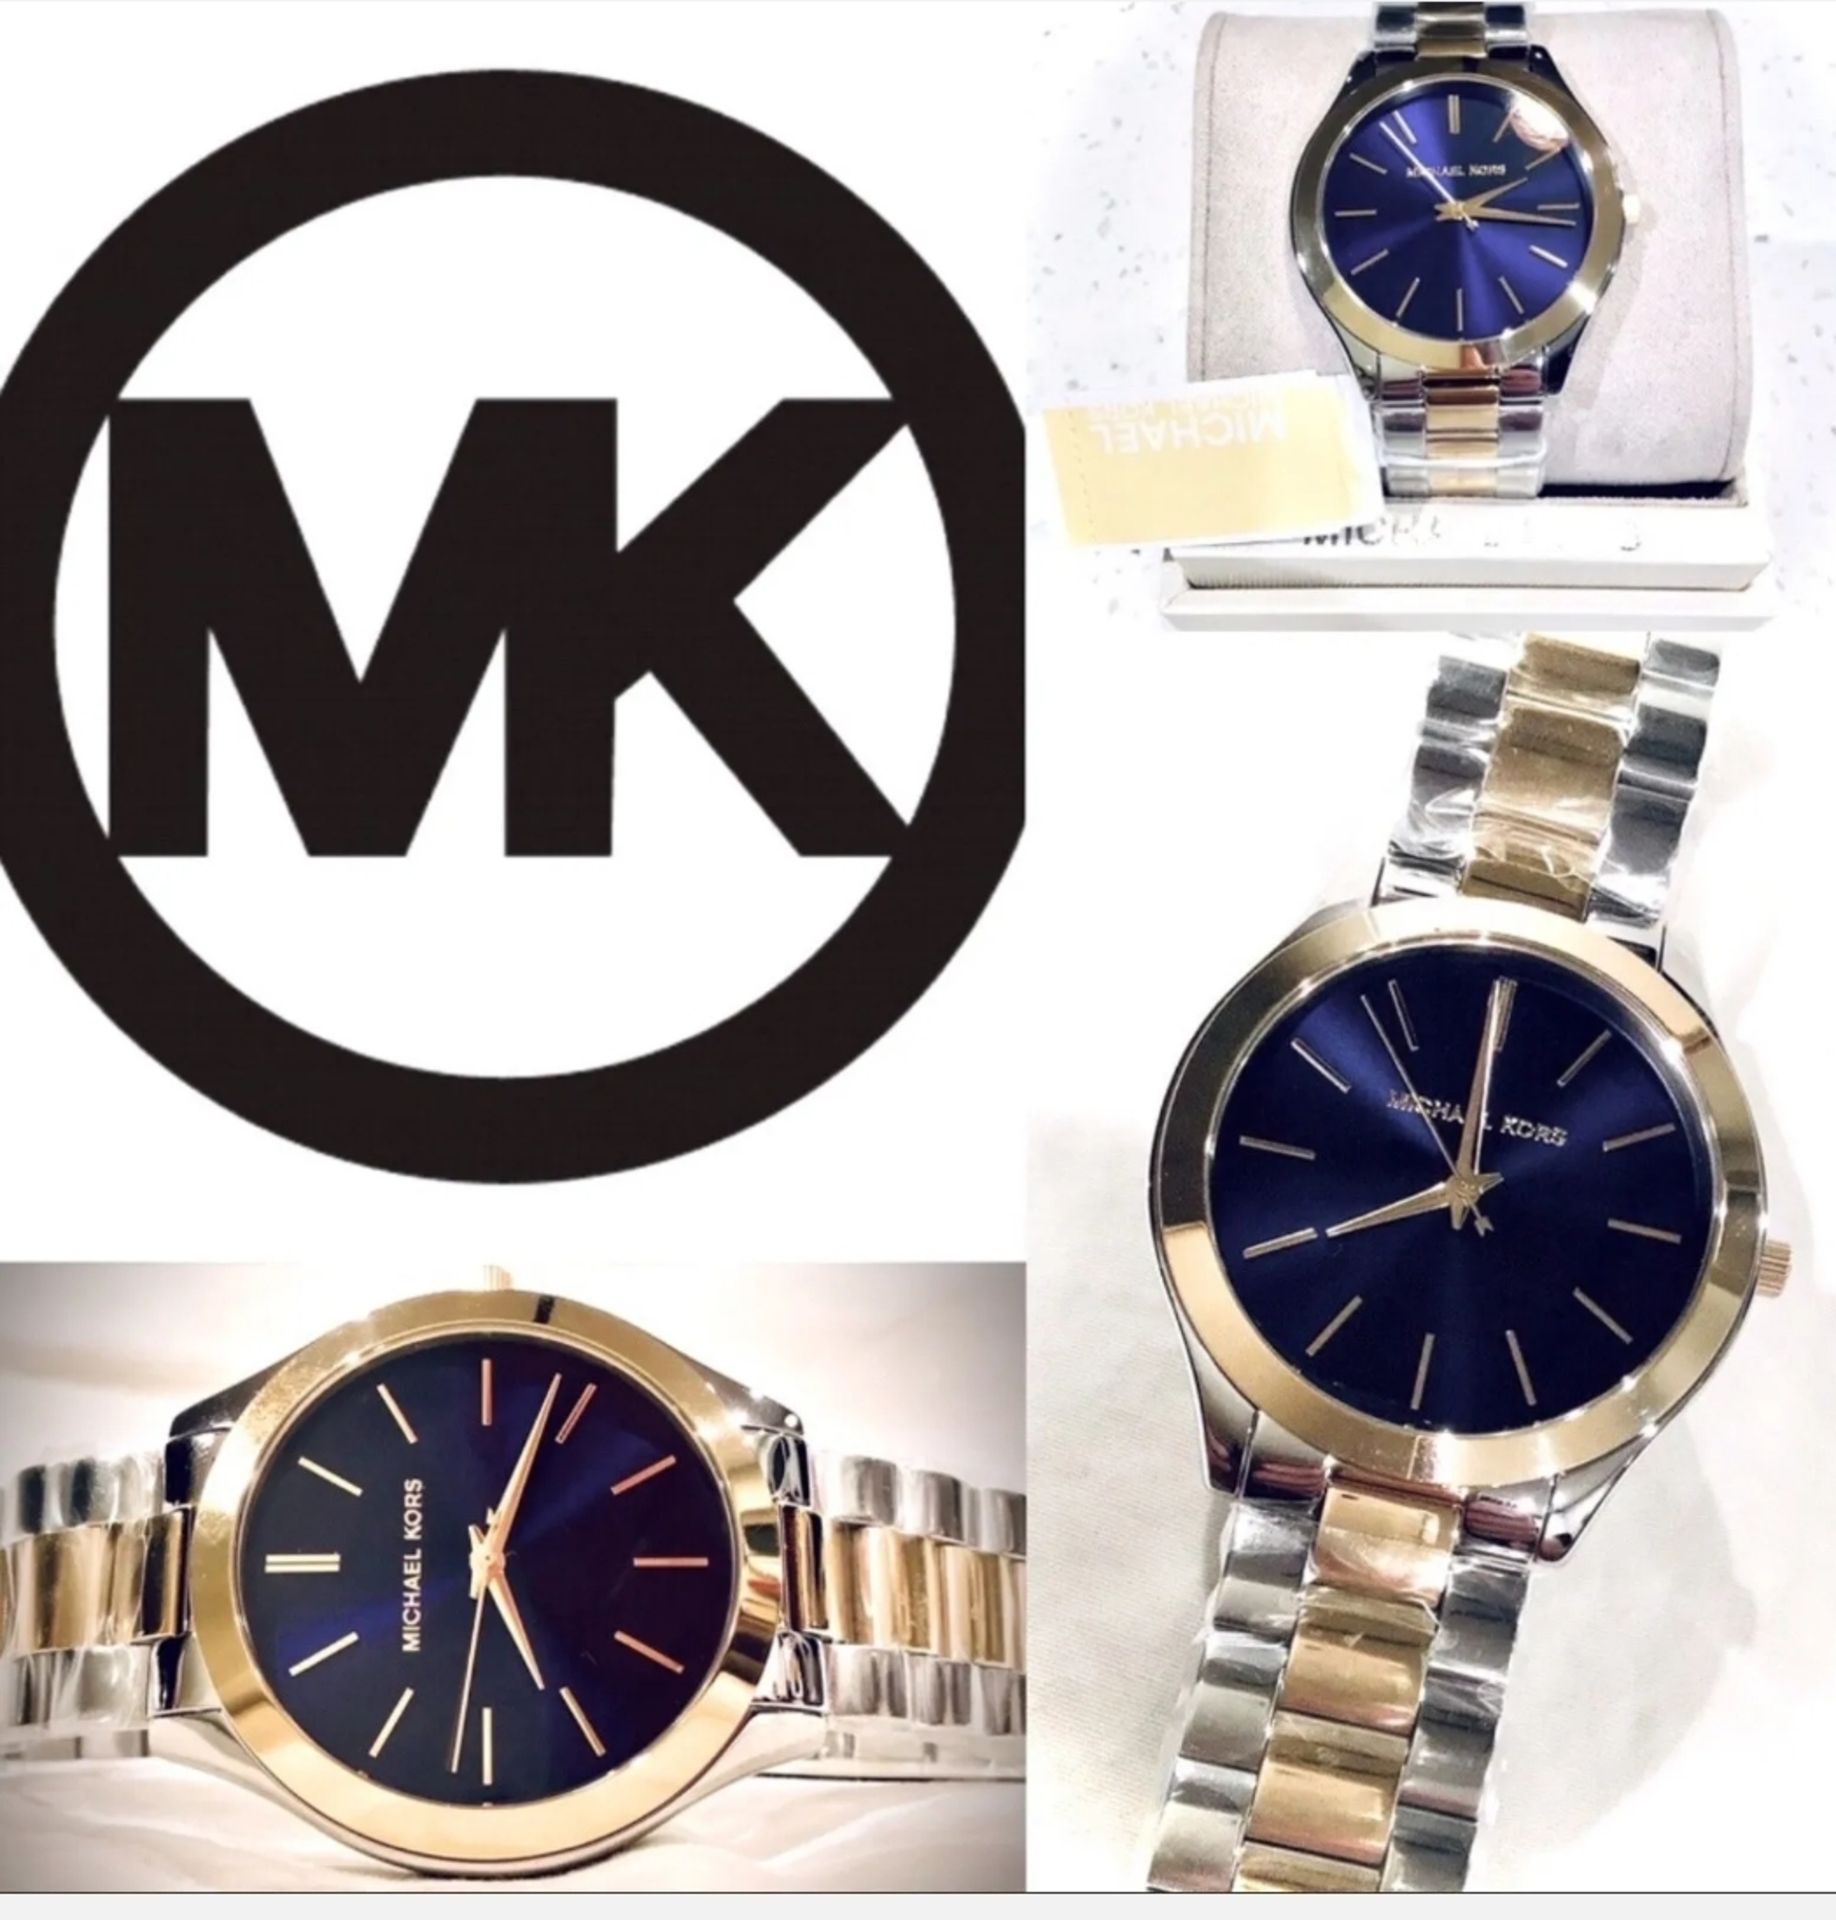 Michael Kors MK3479 Ladies Slim Runway Watch Two Tone Stainless Steel Blue Dial Quartz Watch - Image 4 of 7